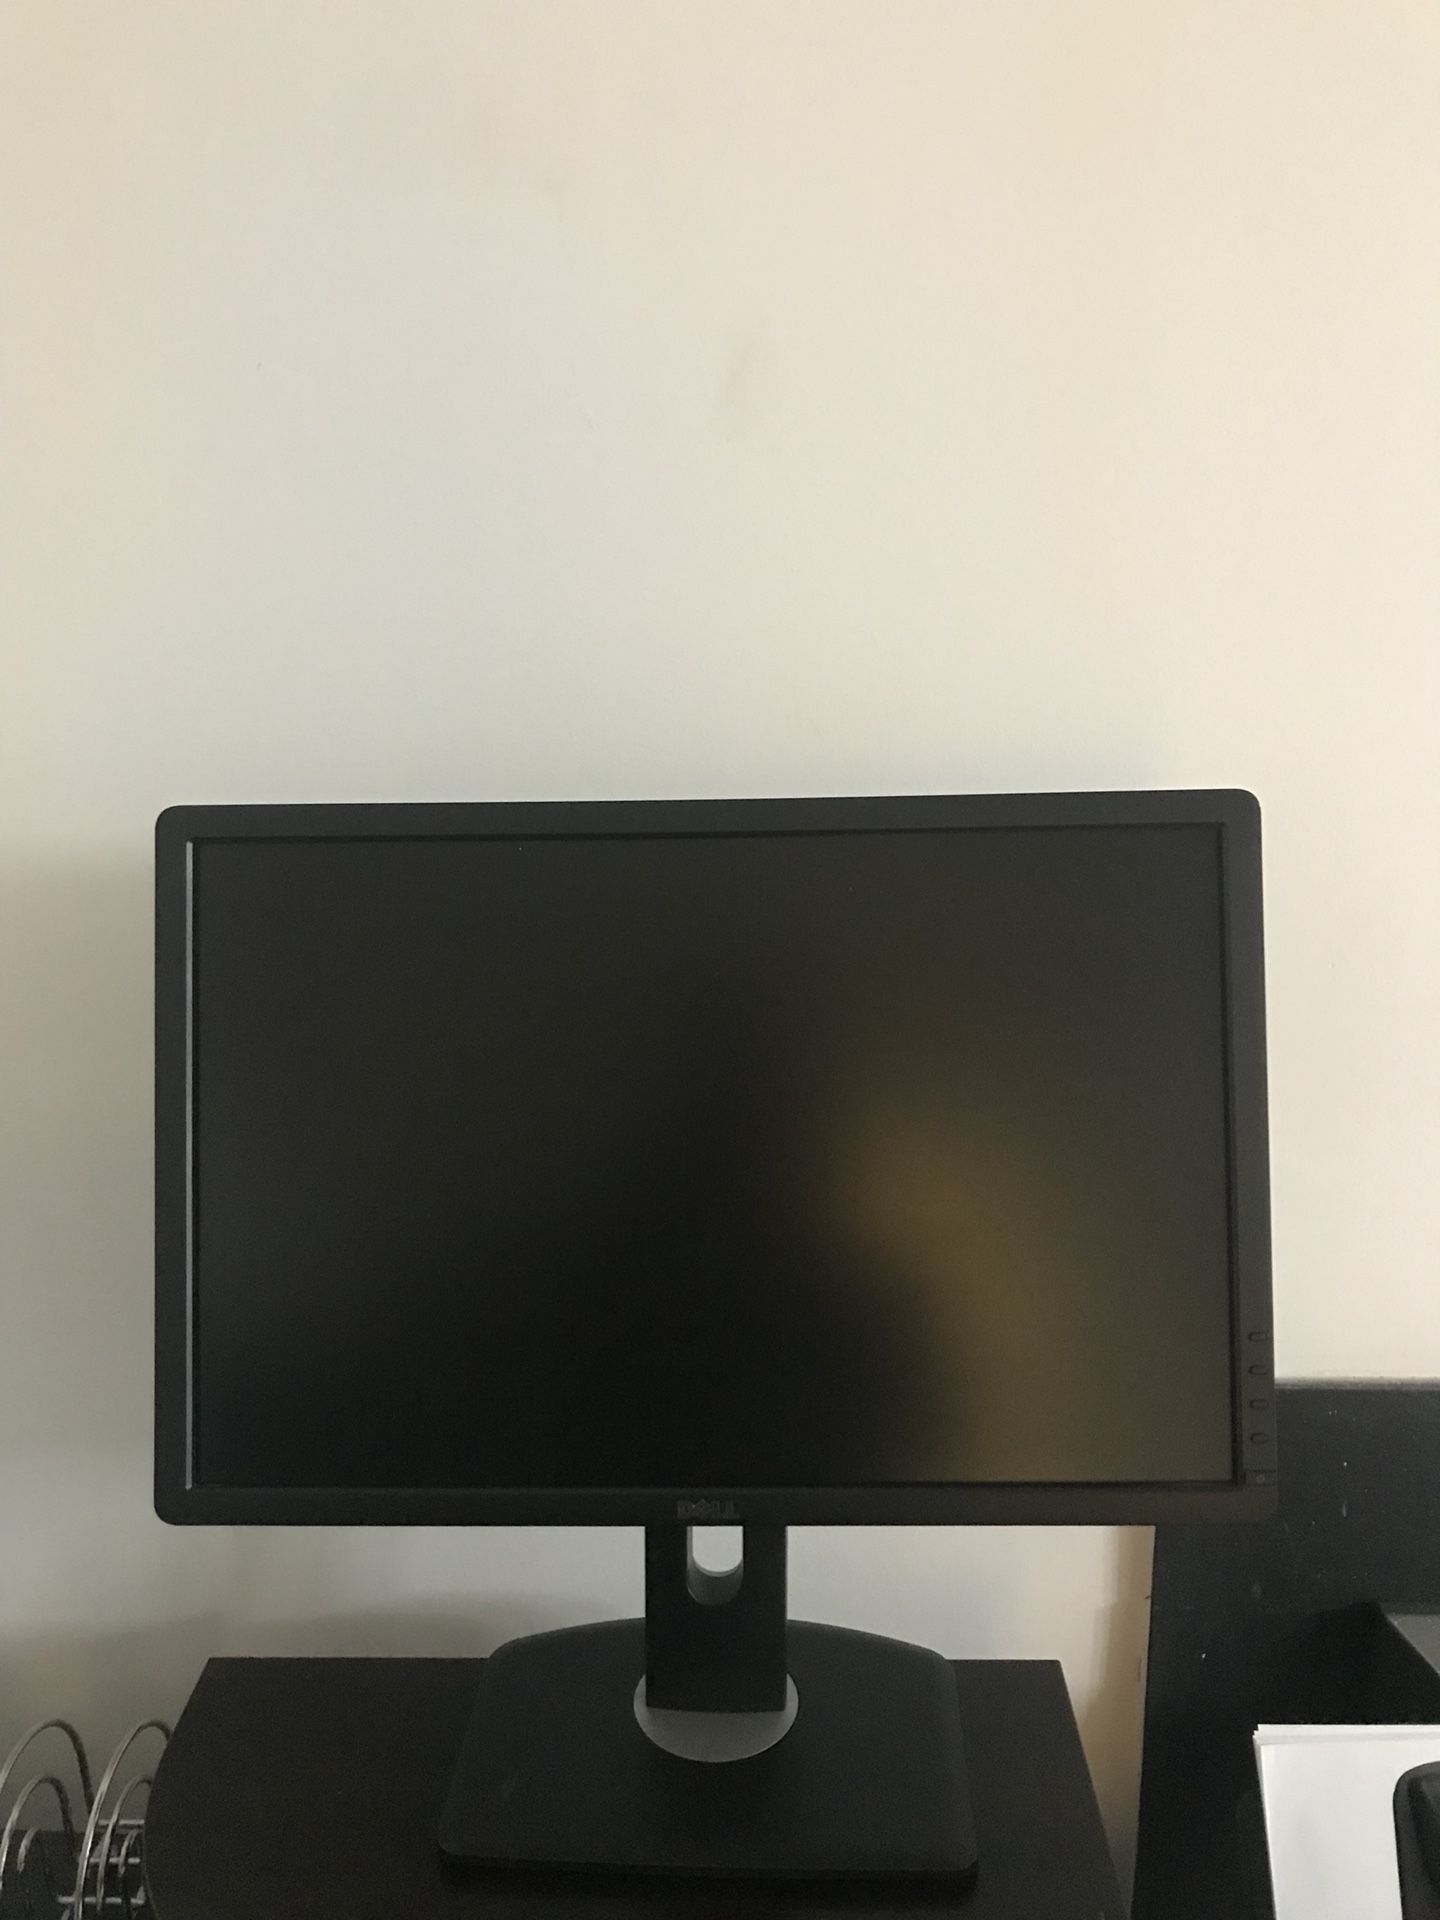 20” Dell computer monitor